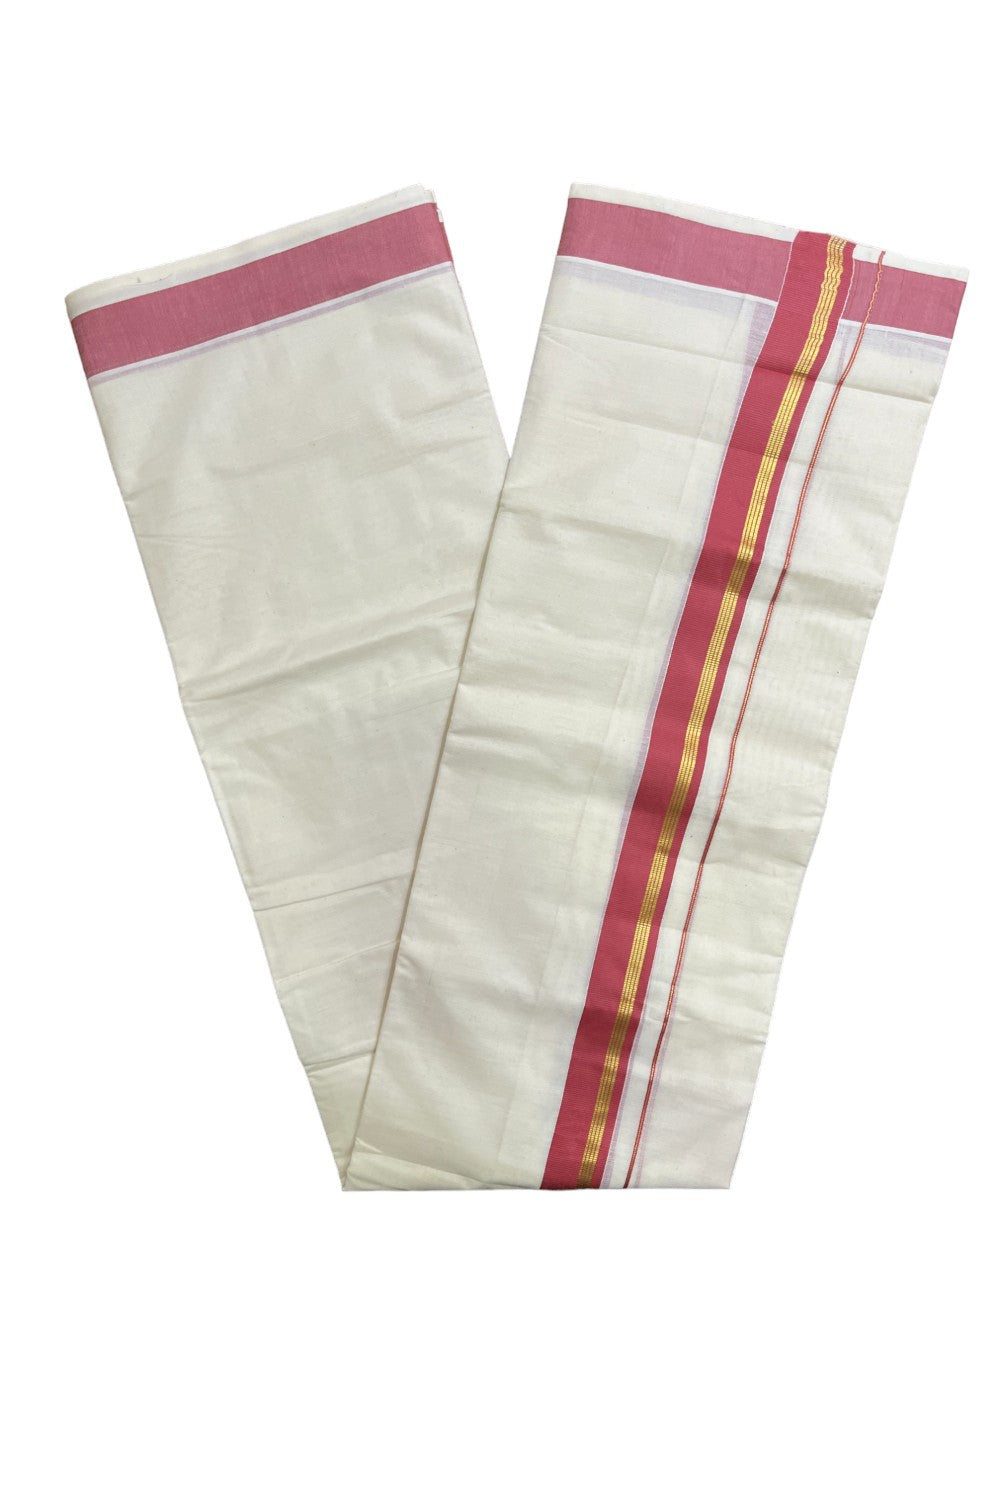 Kerala Pure Cotton Double Mundu with Onion Pink and Kasavu Border (South Indian Kerala Dhoti)